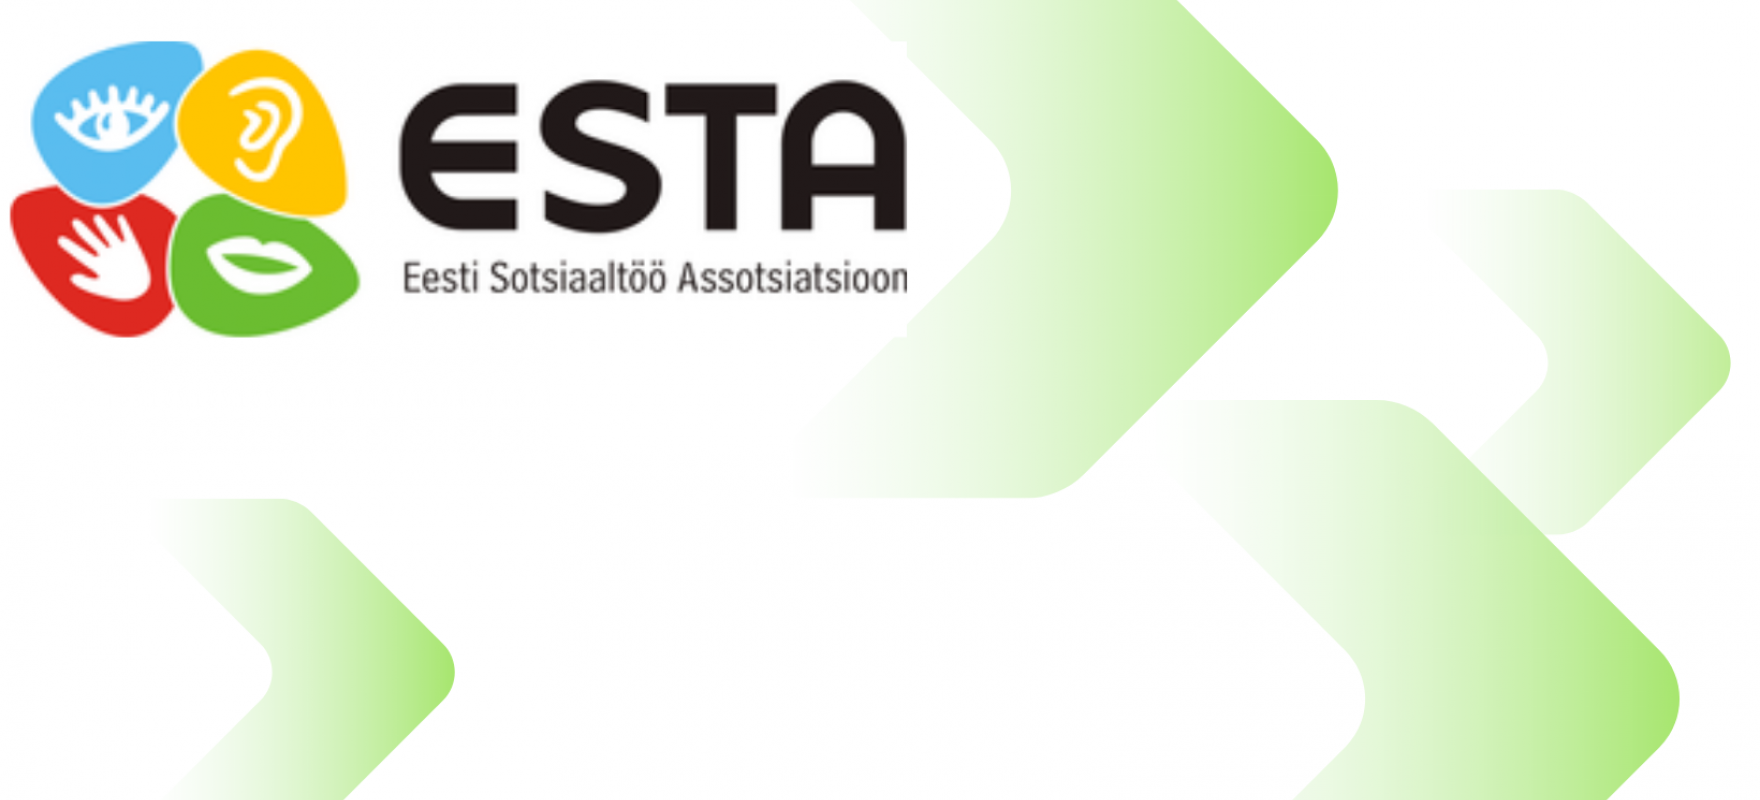 ESTA logo